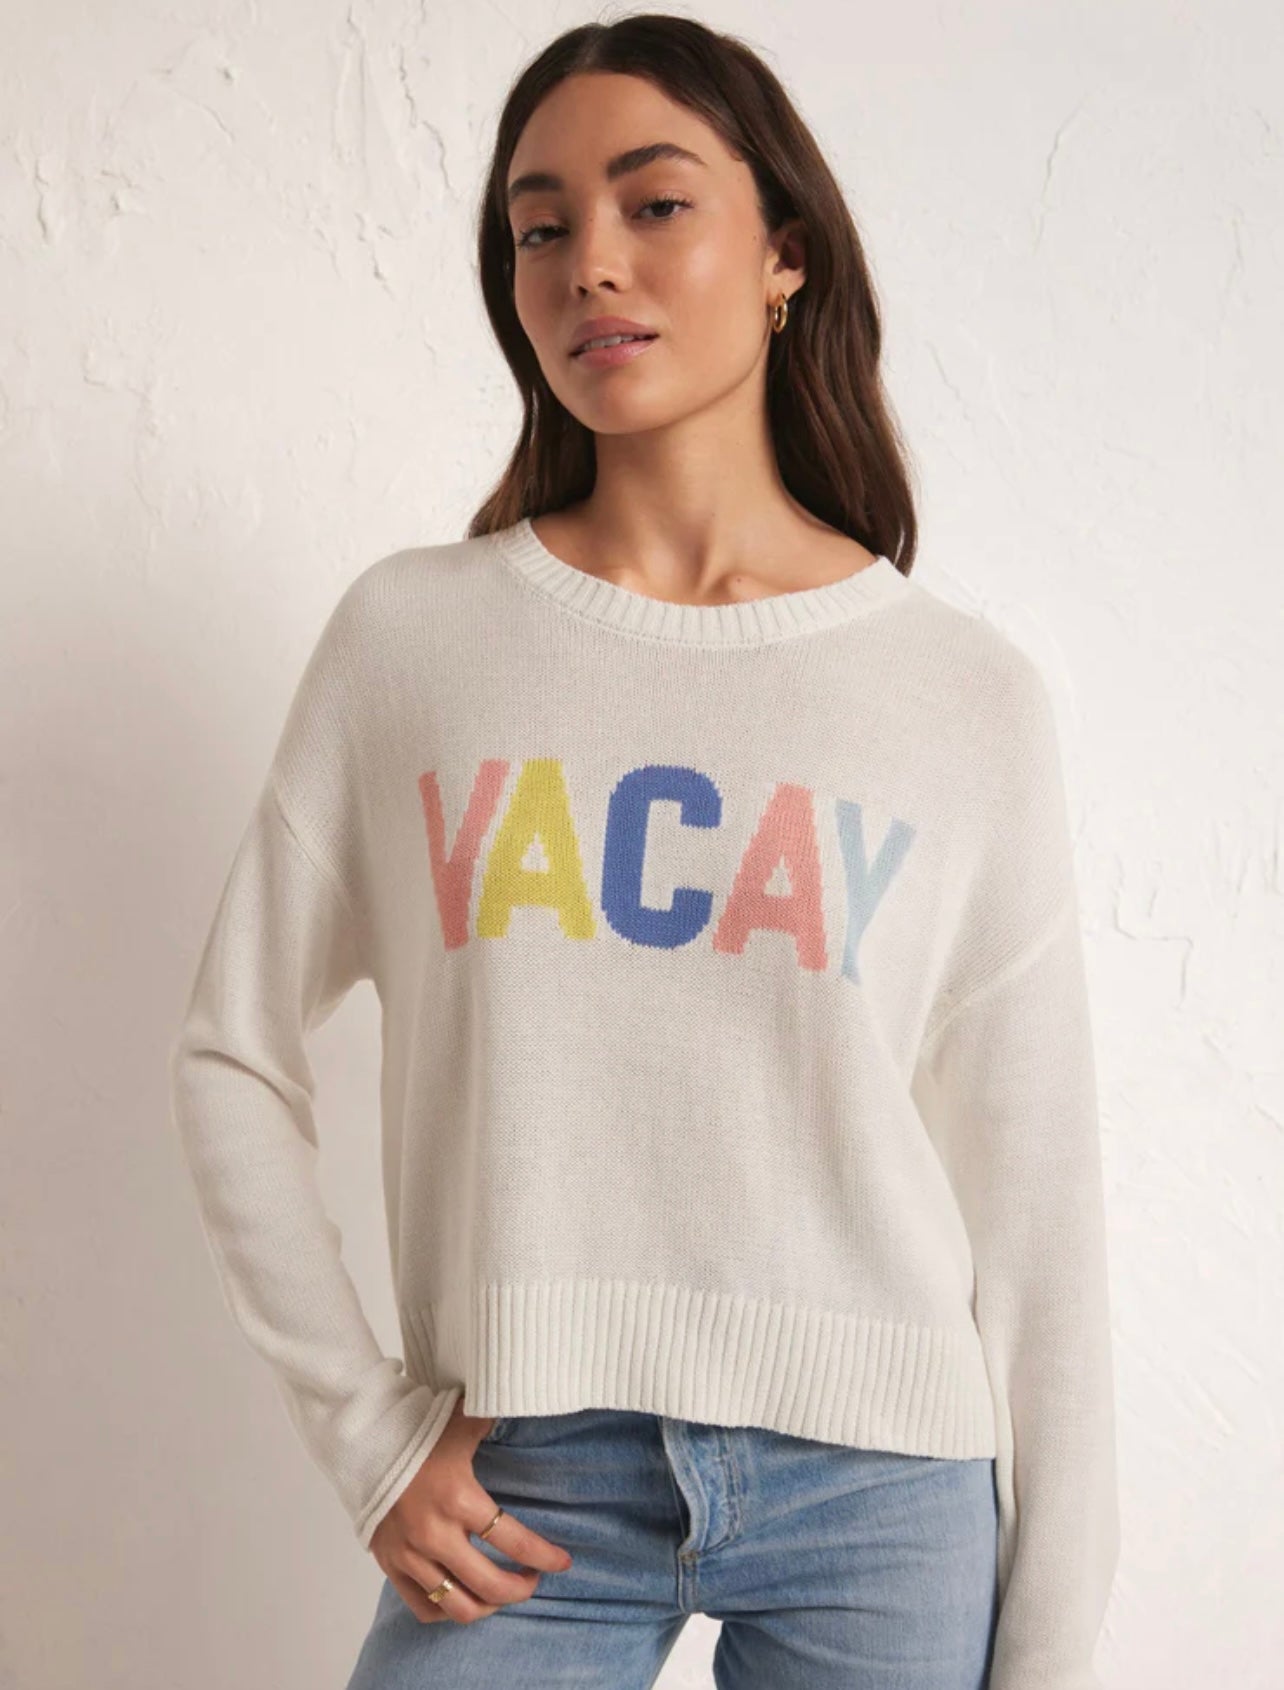 VACAY Sweater